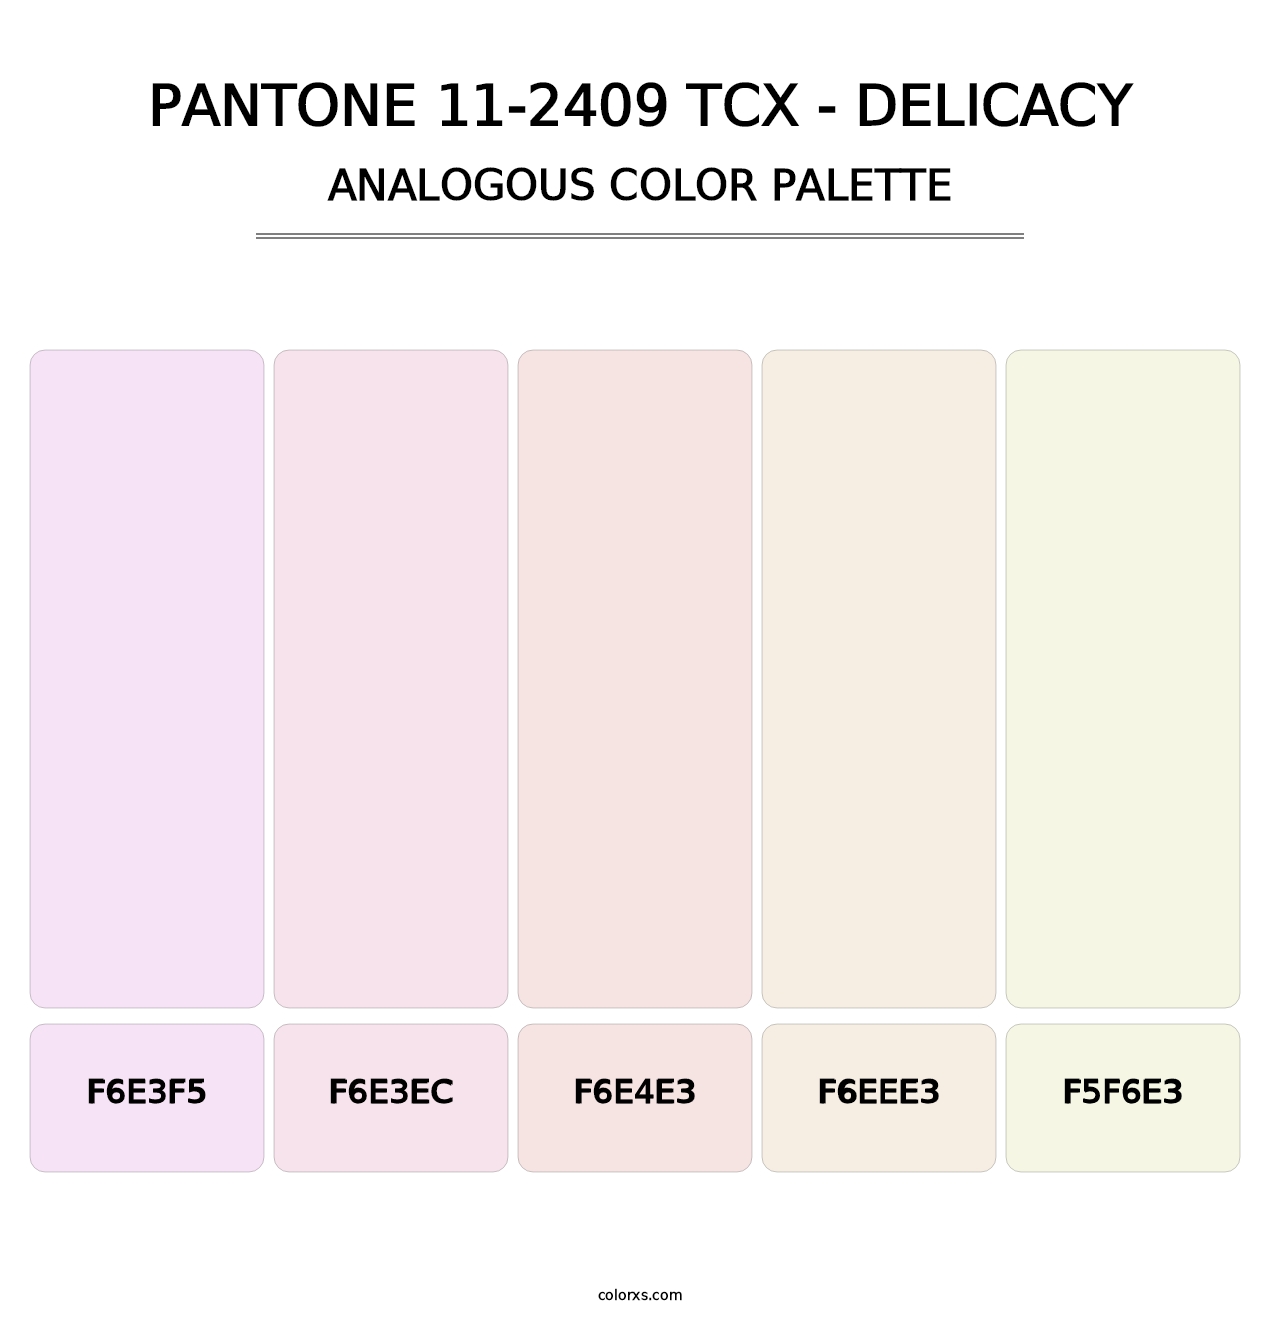 PANTONE 11-2409 TCX - Delicacy - Analogous Color Palette